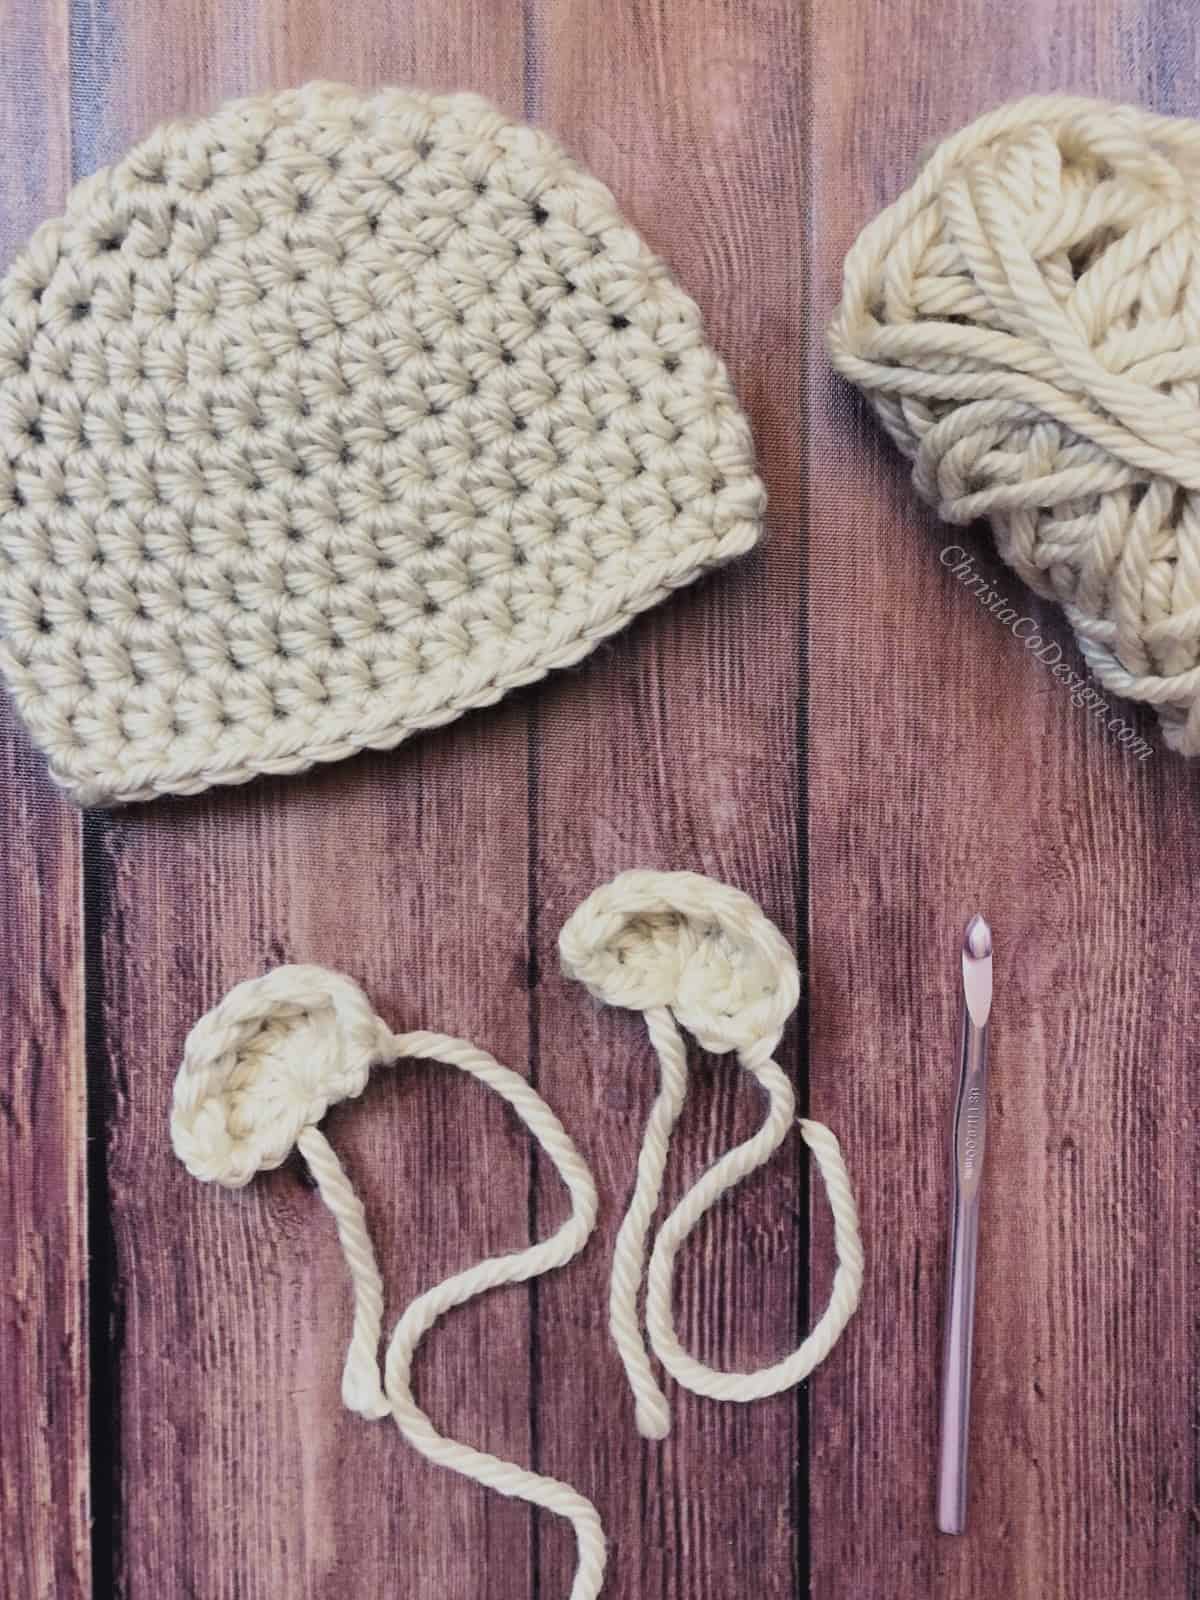 Two crochet bear ears ready to sew on crochet hat in chunky yarn.